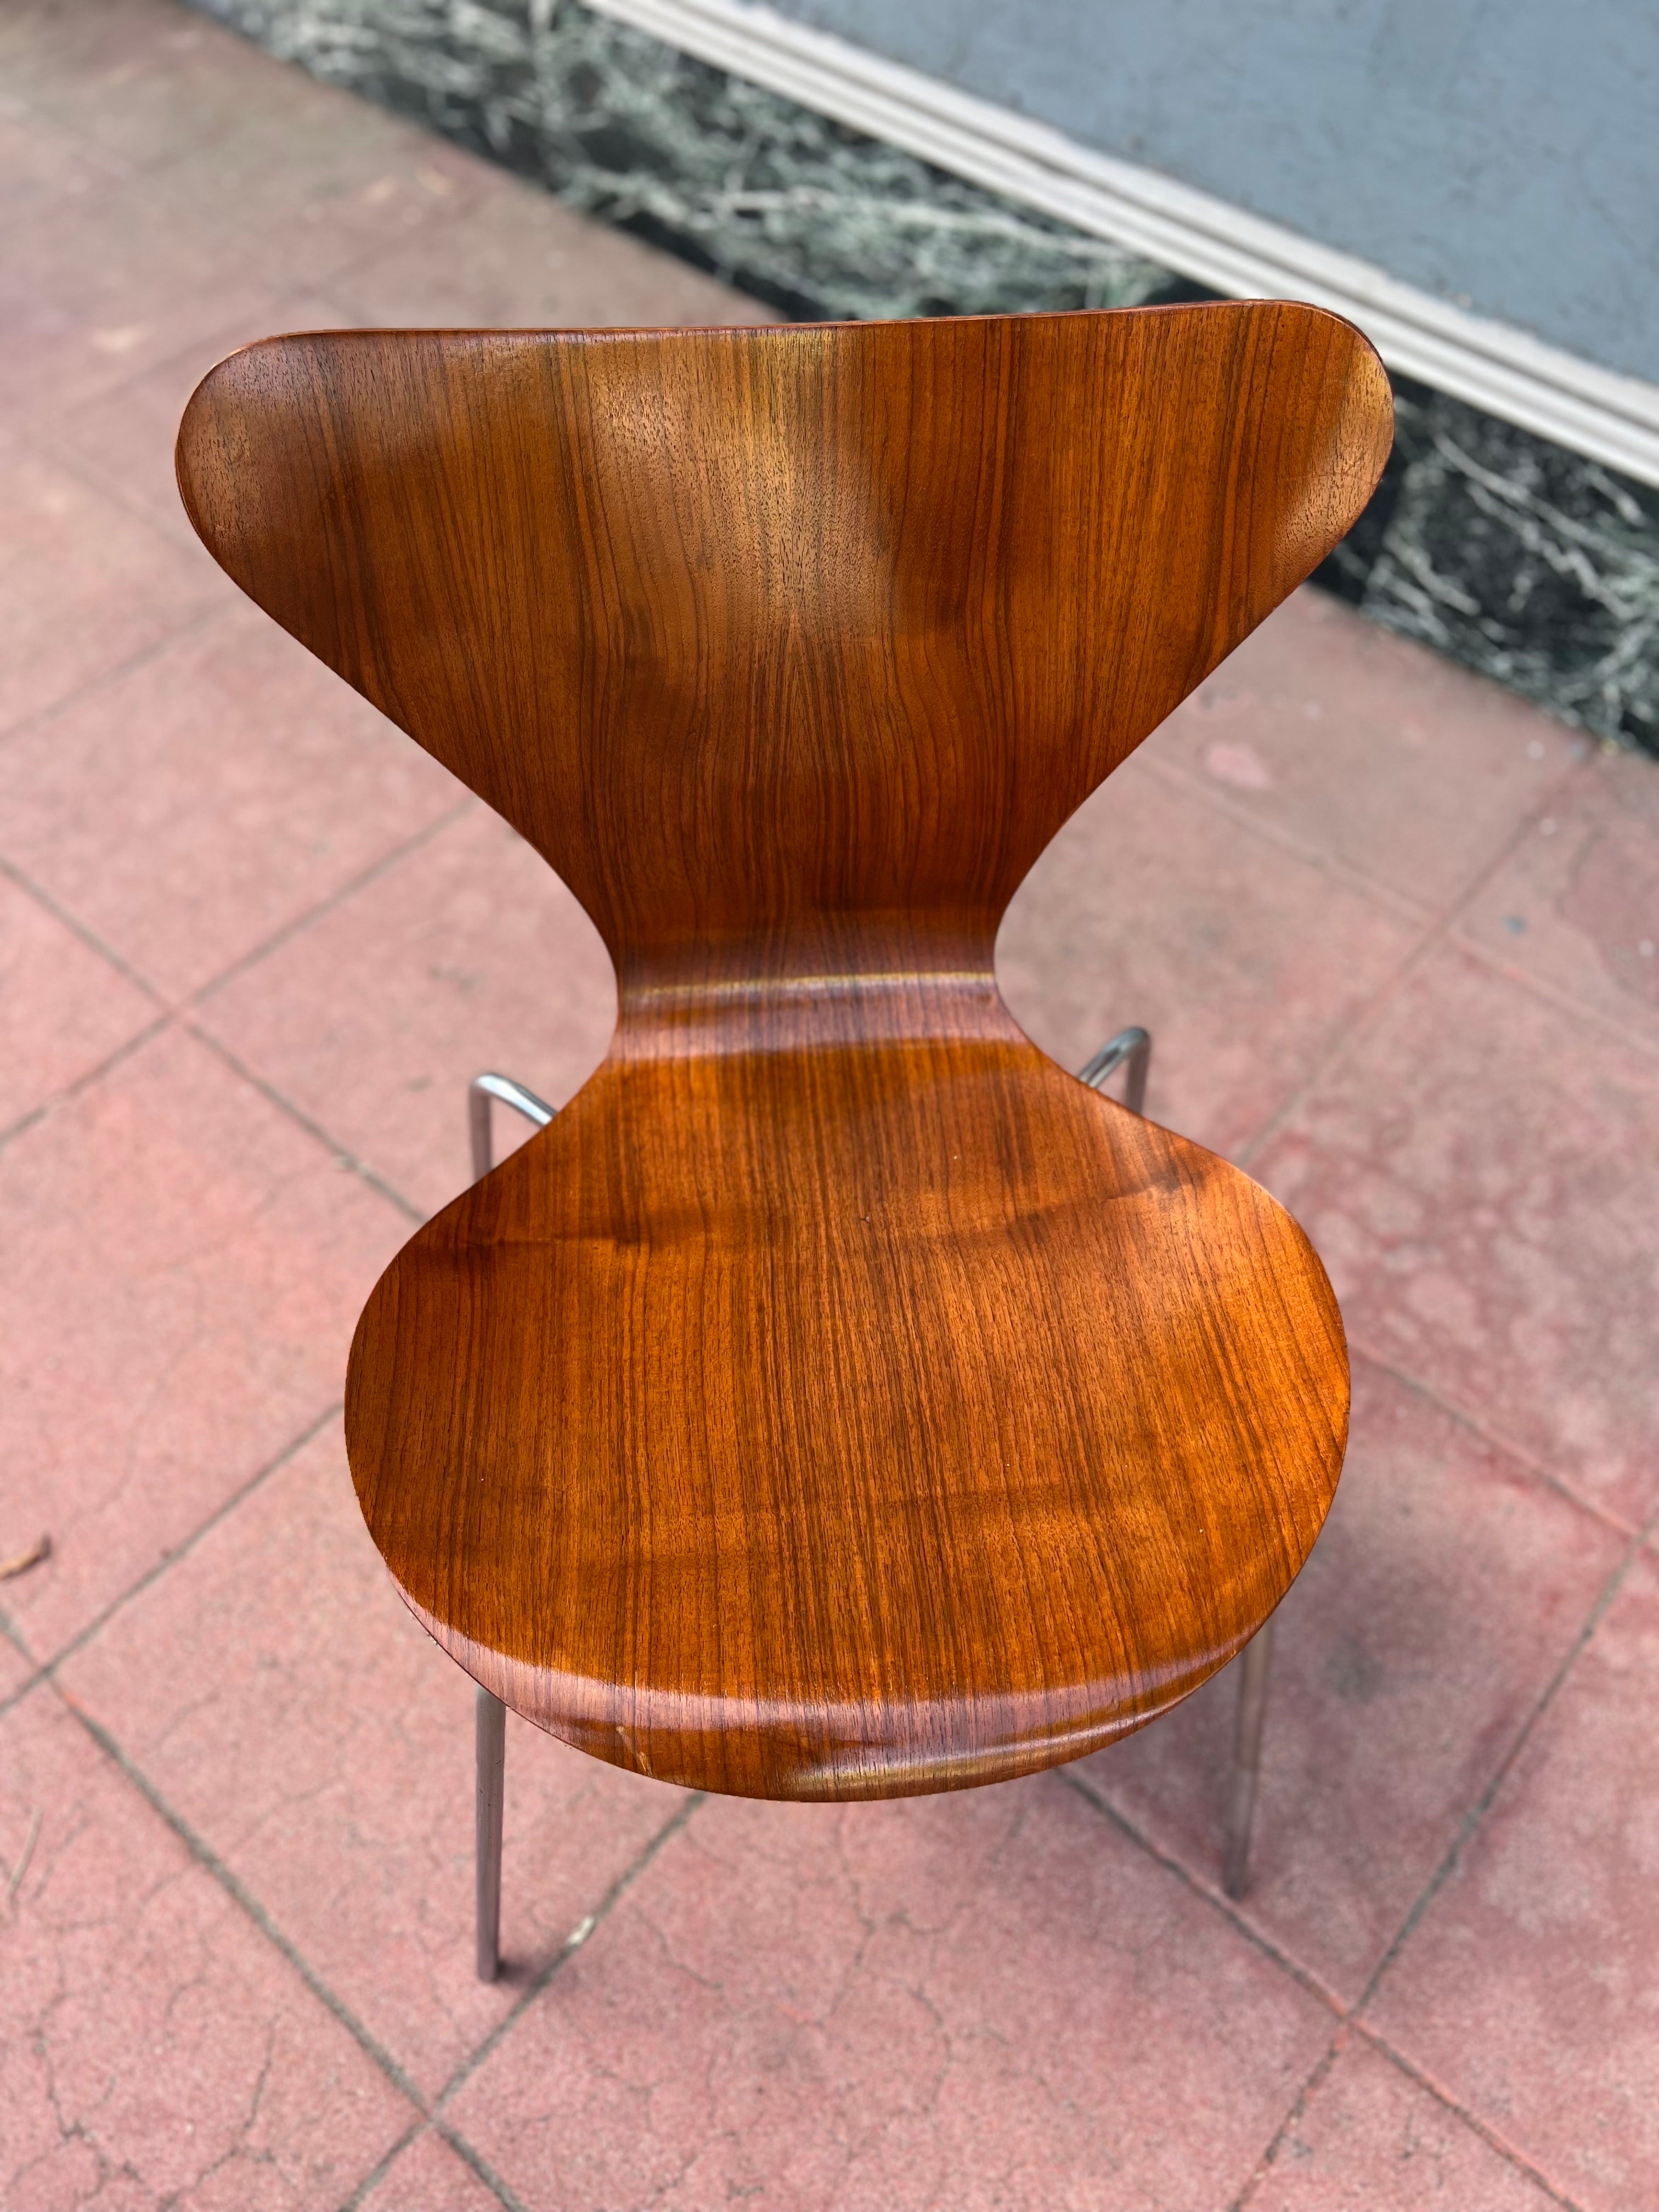 Schöne und seltene 1. Auflage Serie 7 Stuhl von Arne Jacobsen entworfen, für Fritz Hansen frühe Produktion für den dänischen Markt gemacht Metallkappe mit dem FH-Logo und Danmark eingeprägt, was bedeutet, es war nicht für den Export gemacht, hat